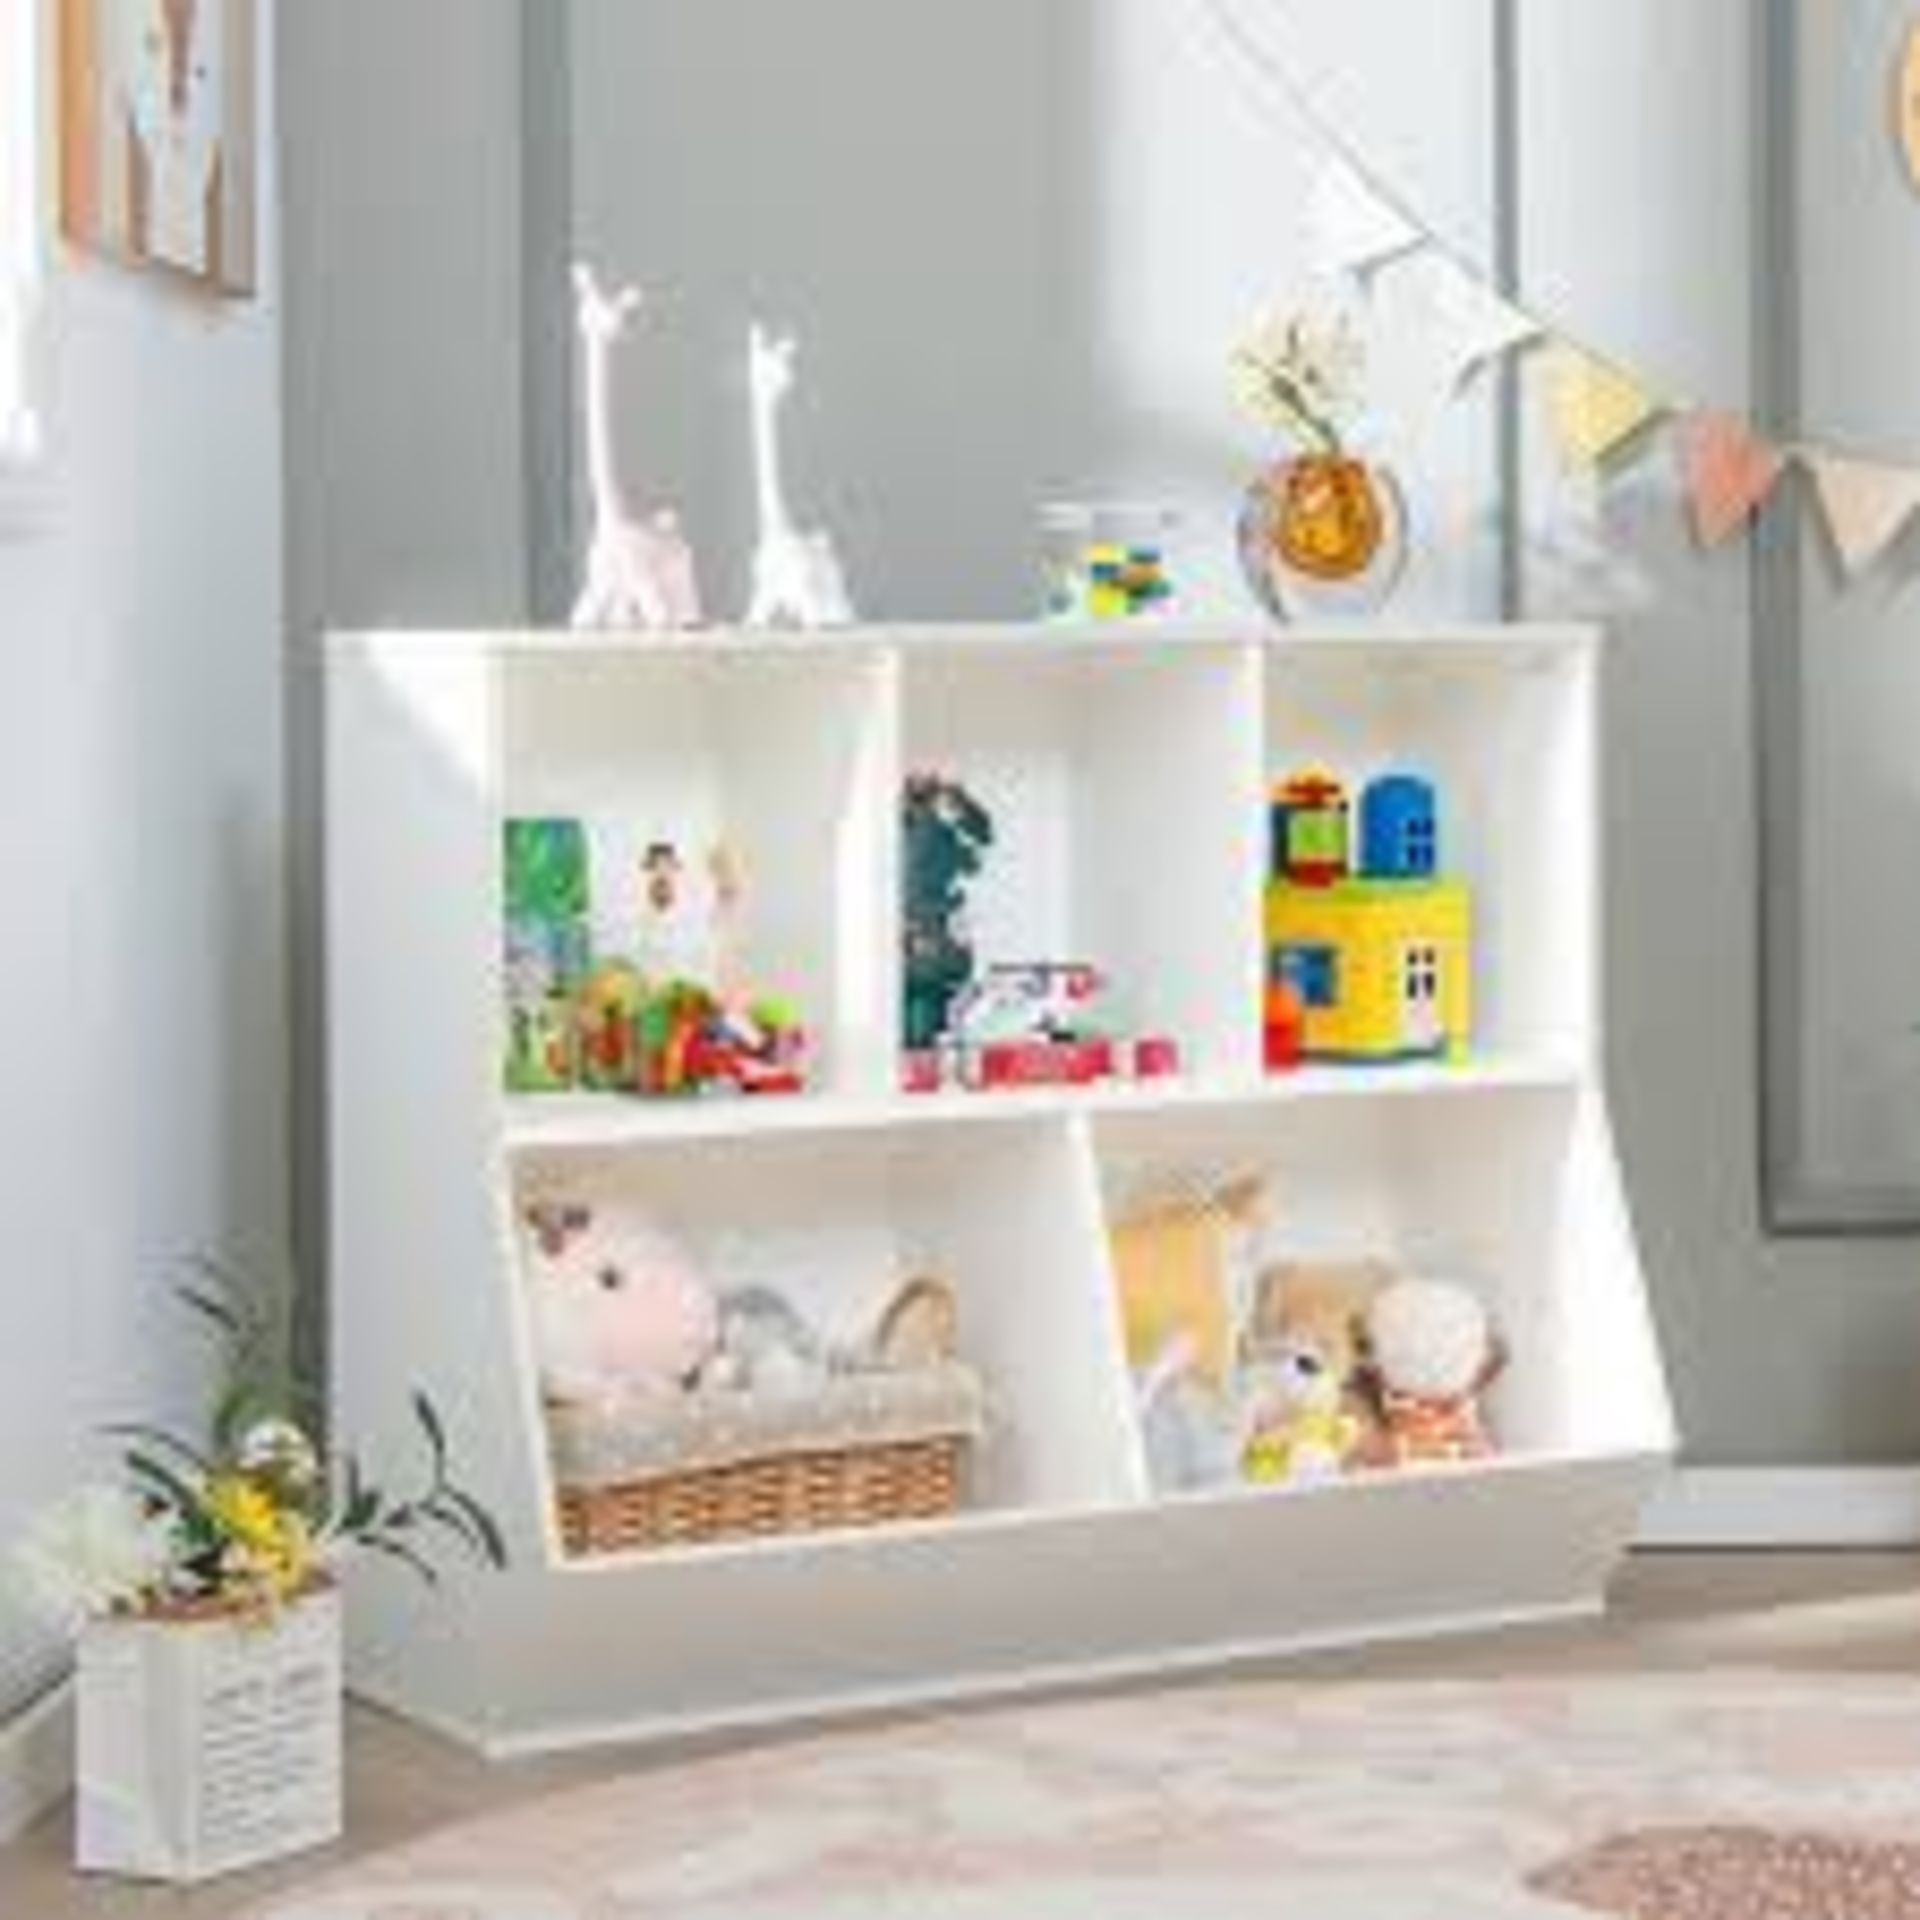 5-Cubby Kids Toy Storage Organizer Wooden Bookshelf Display Cabinet Natural - ER54